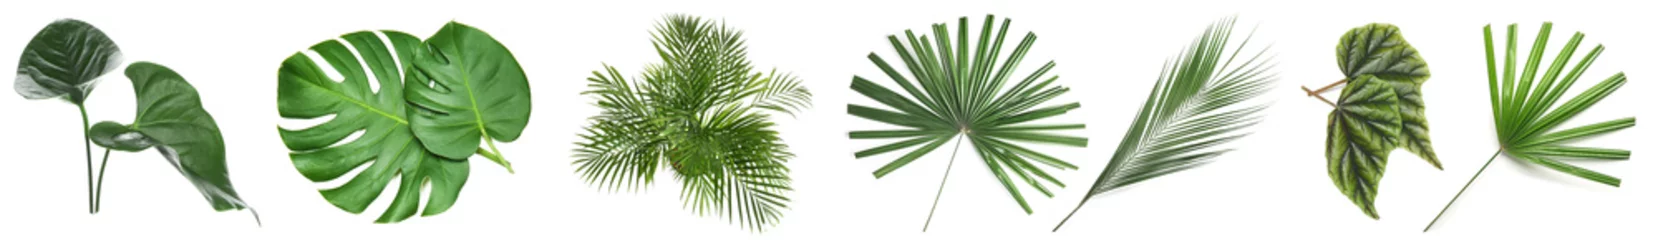 Poster Set van groene tropische bladeren op witte achtergrond © Pixel-Shot